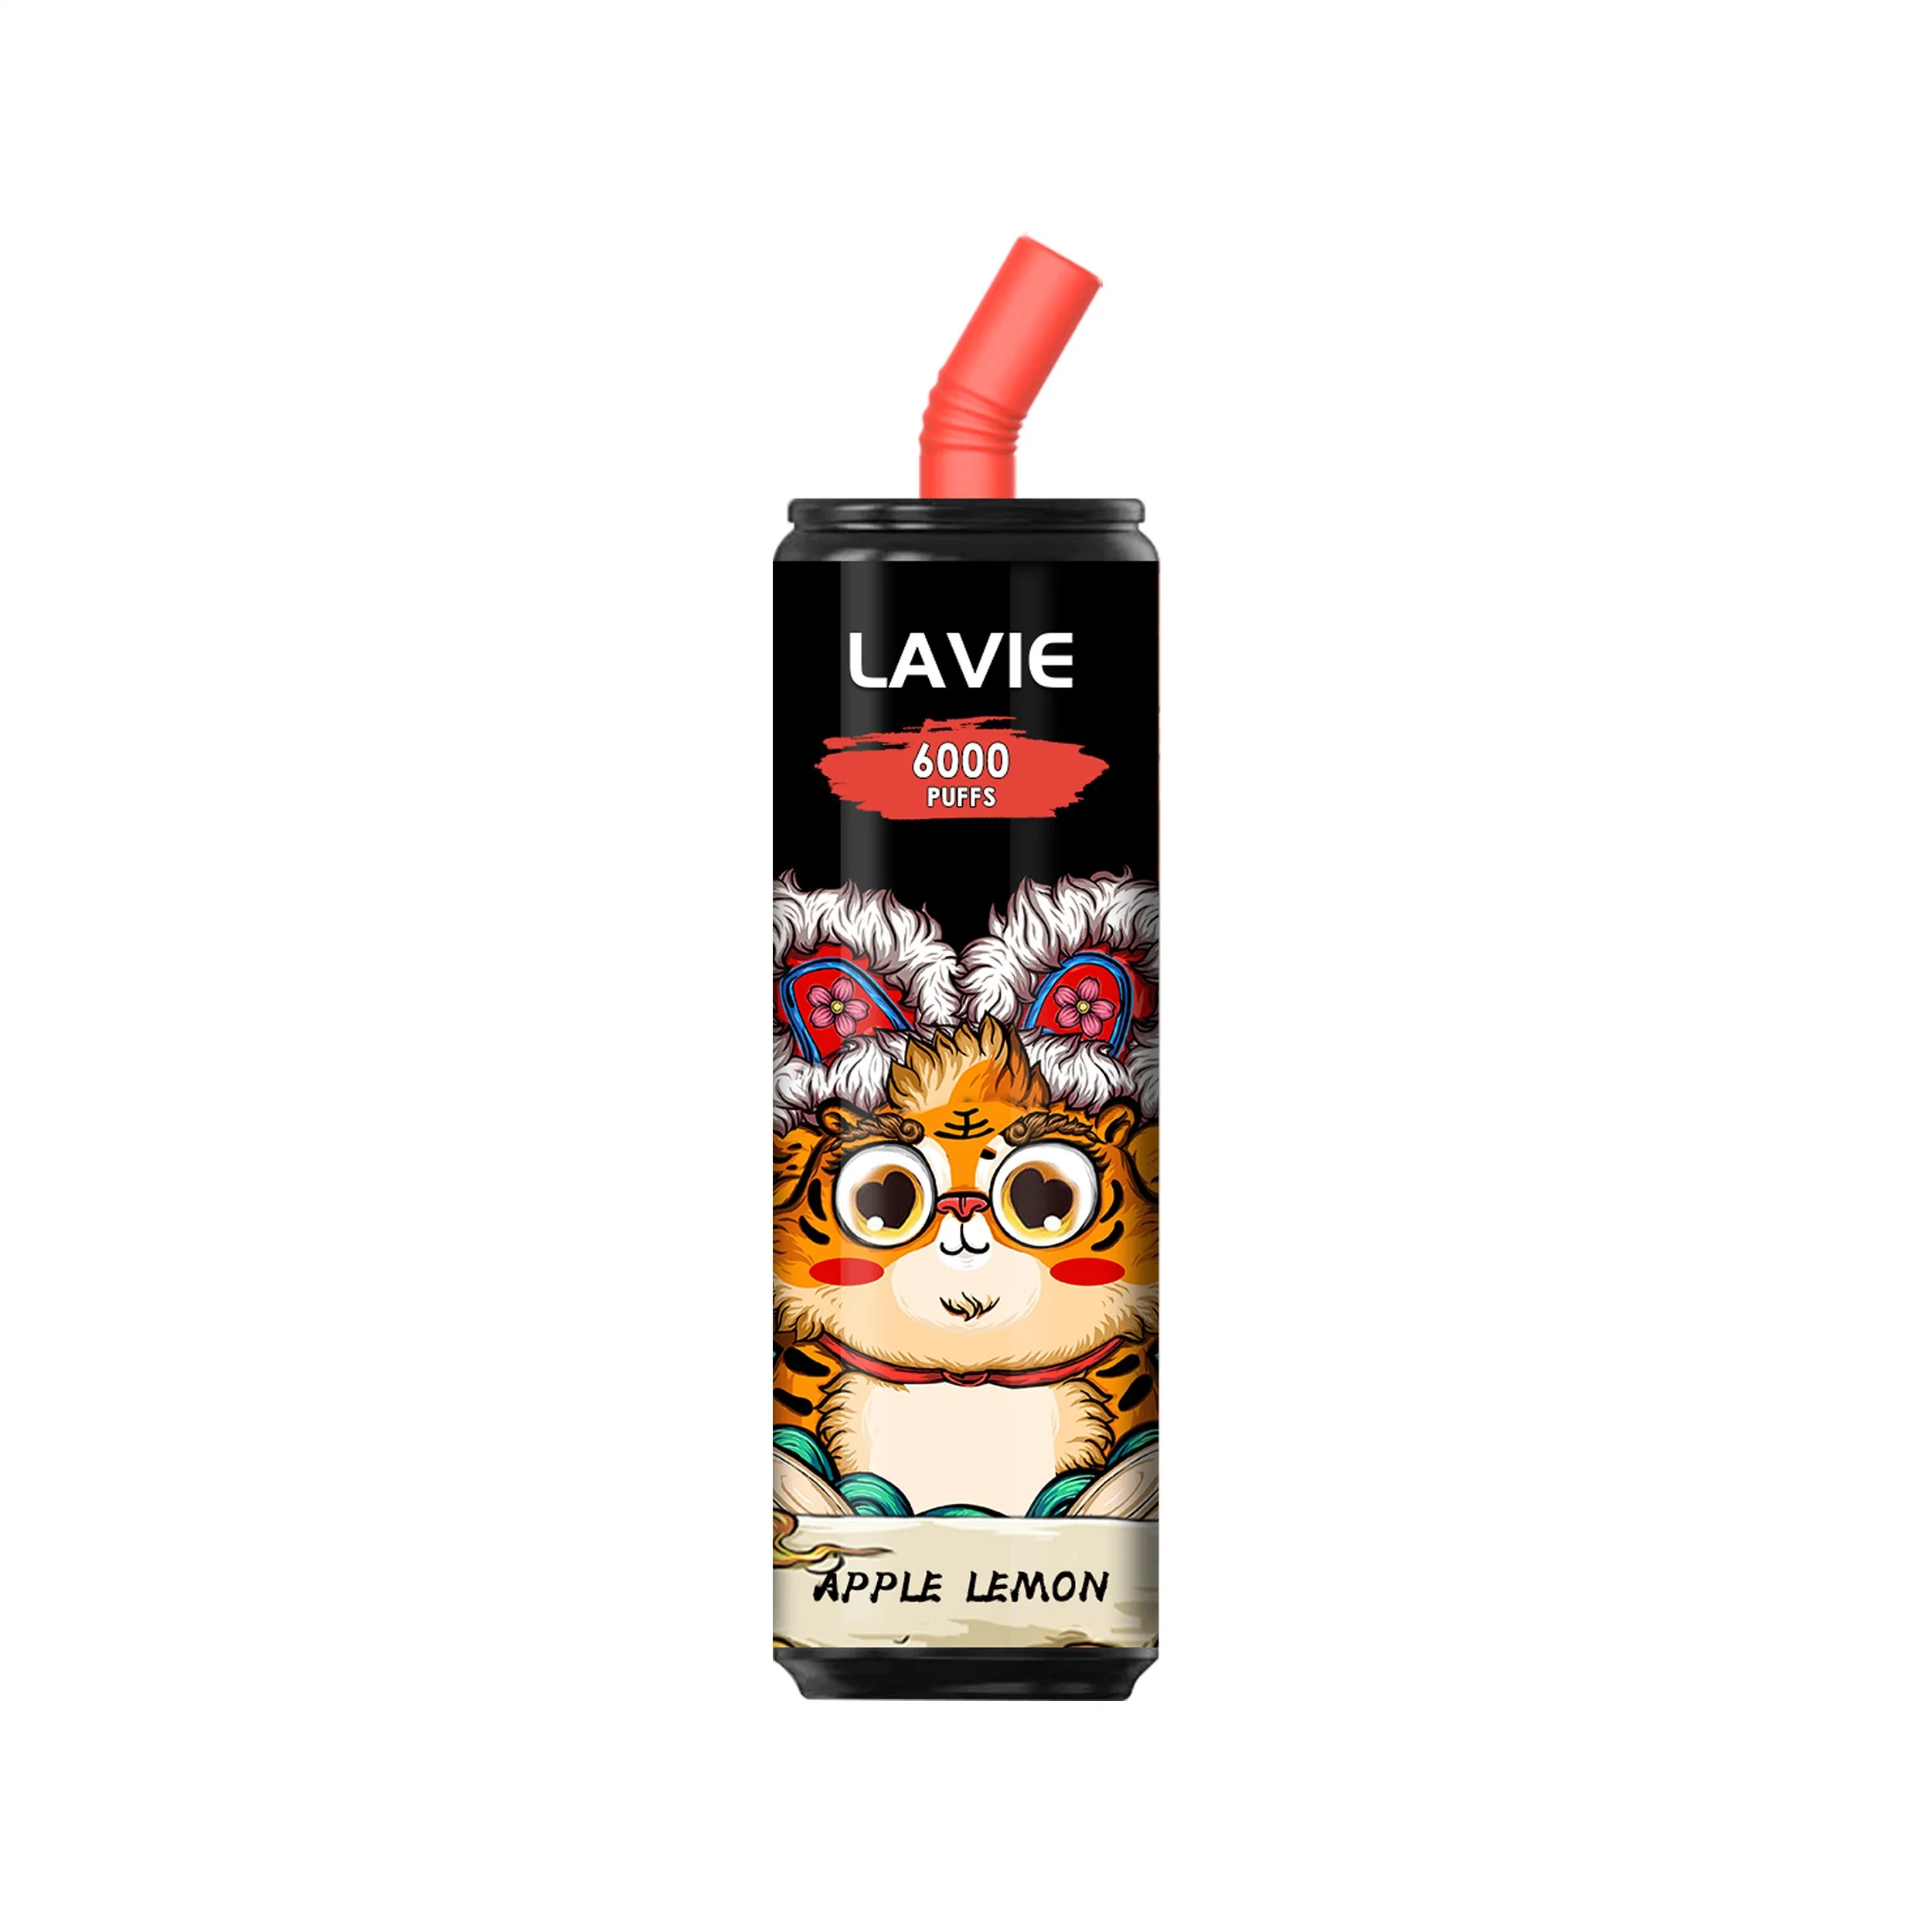 Lavie 6000 Puffs Vapes Disposable Vape Youto Vape Nano Stick Vape Cartridge Packaging Pod Vape Squid Game Electric Vape Pen